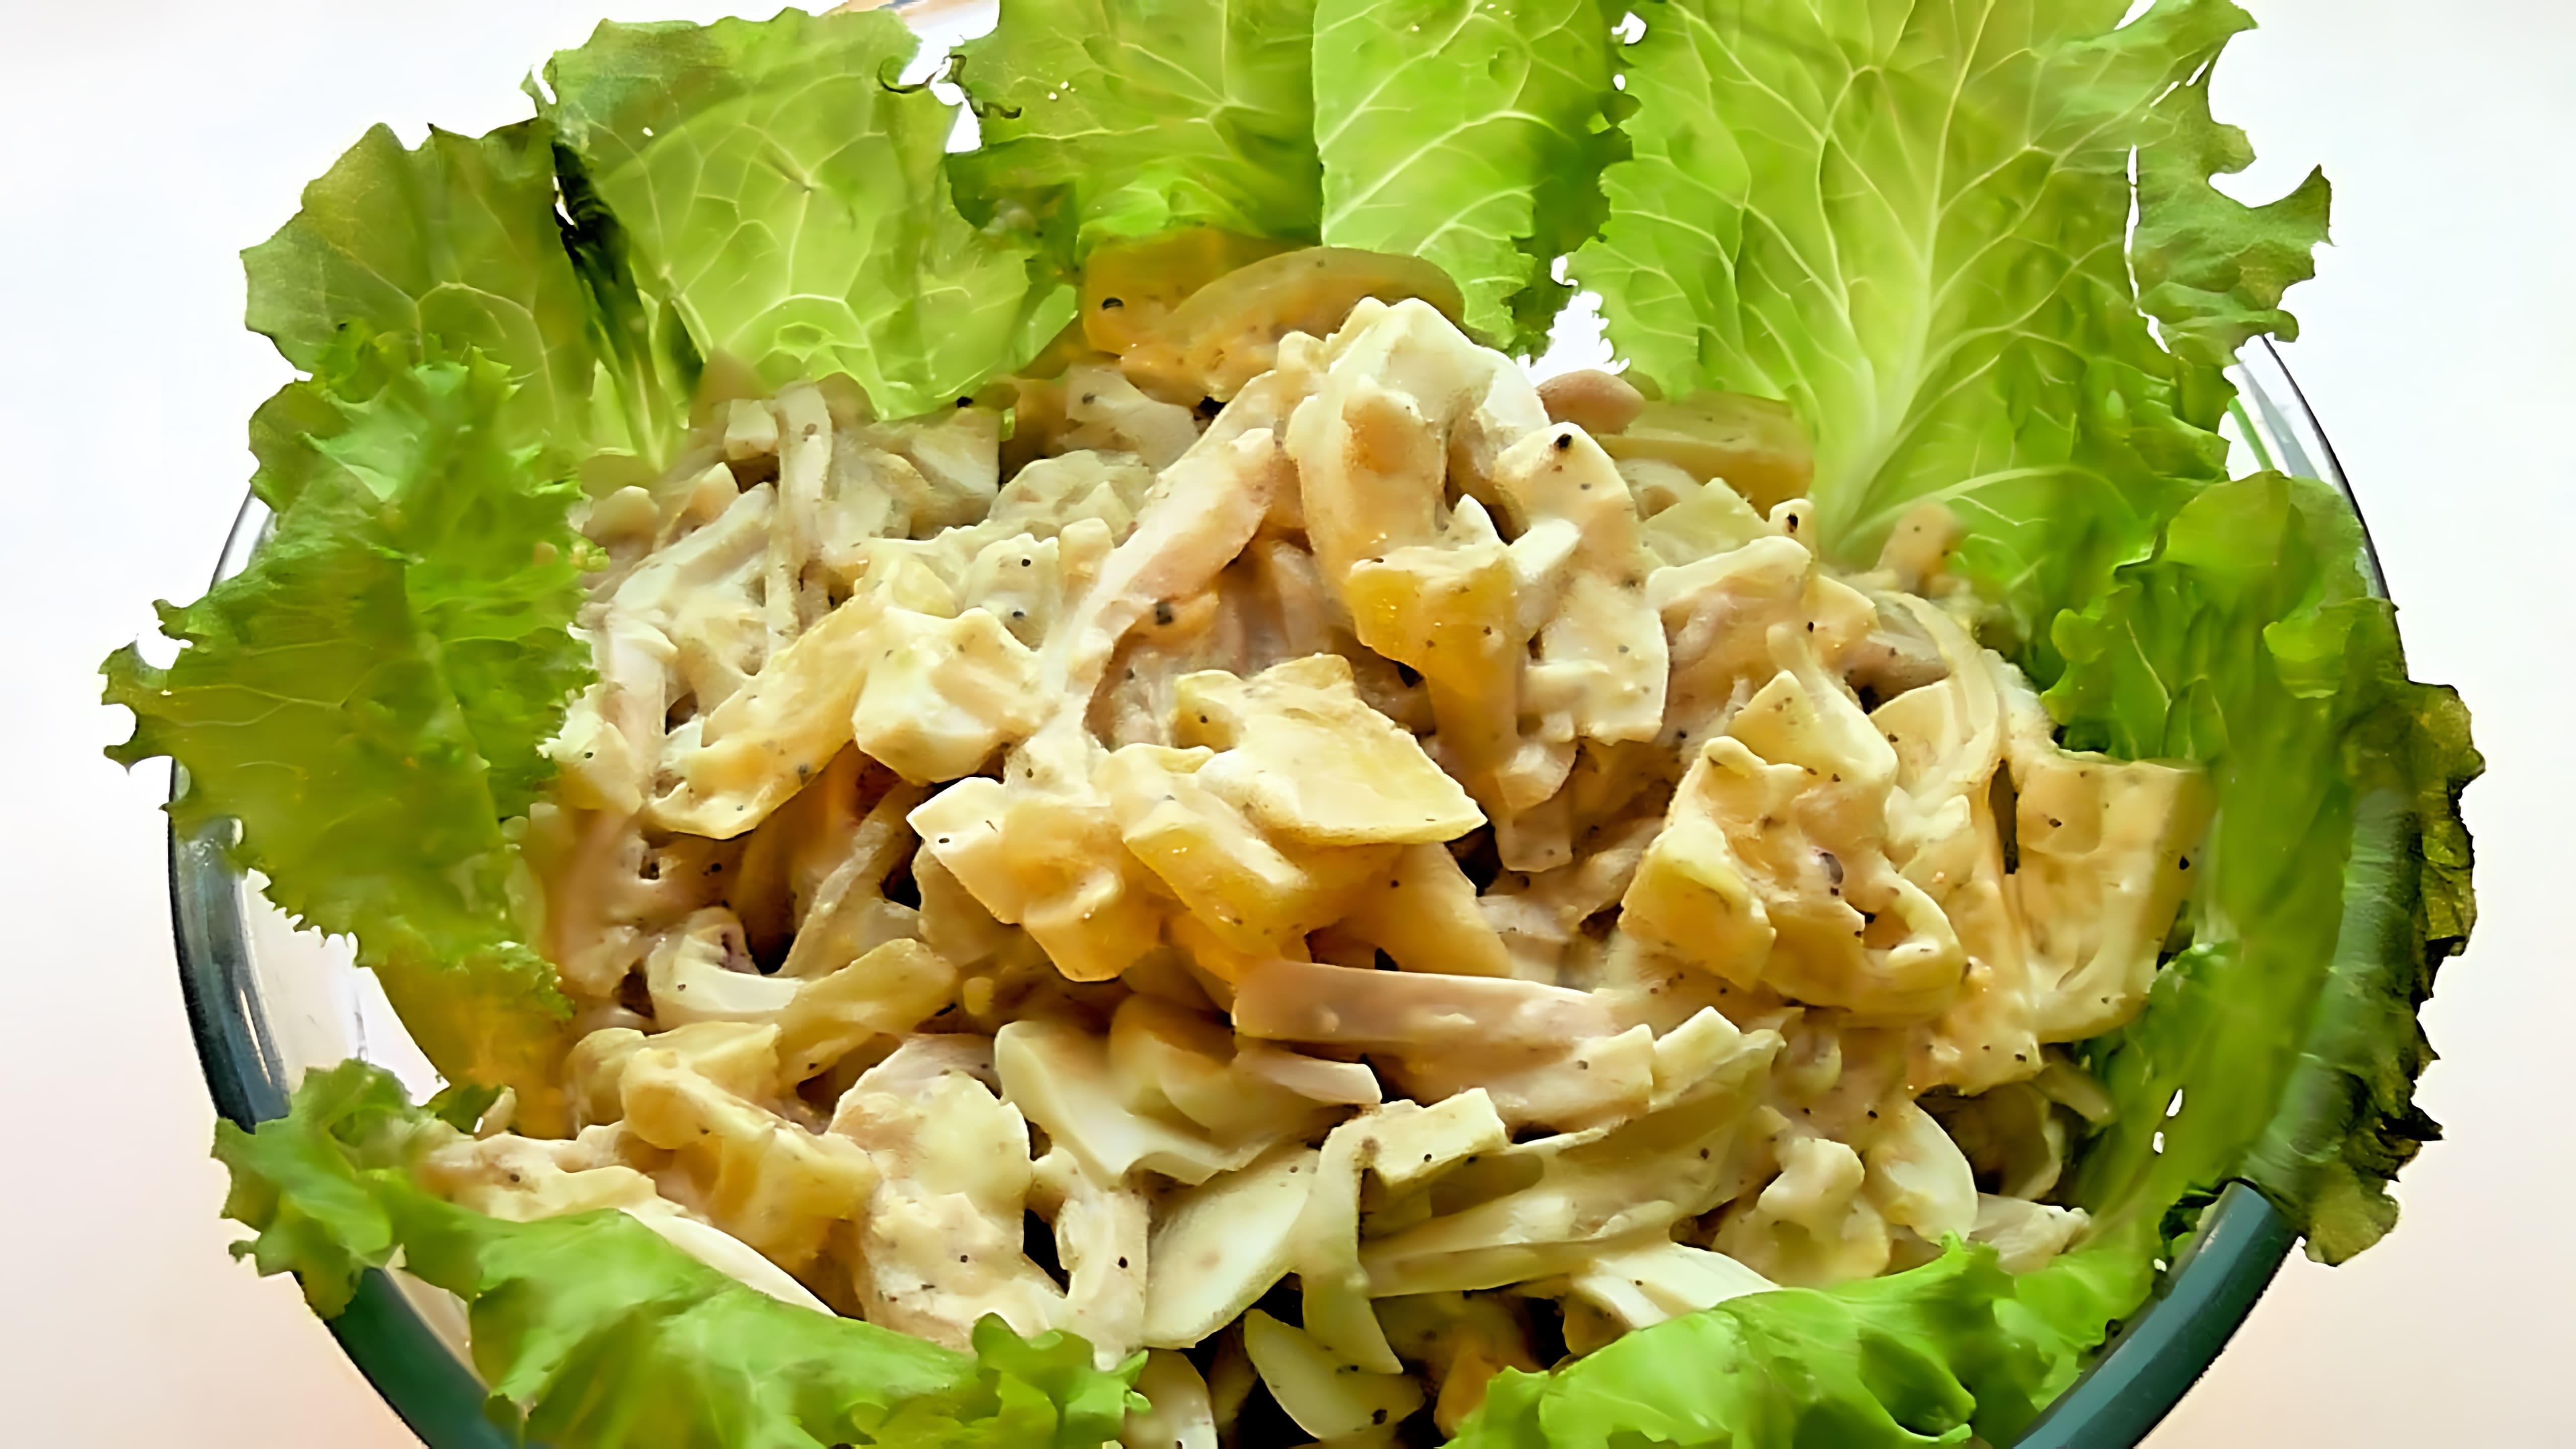 В этом видео демонстрируется процесс приготовления салата из кальмаров с ананасами